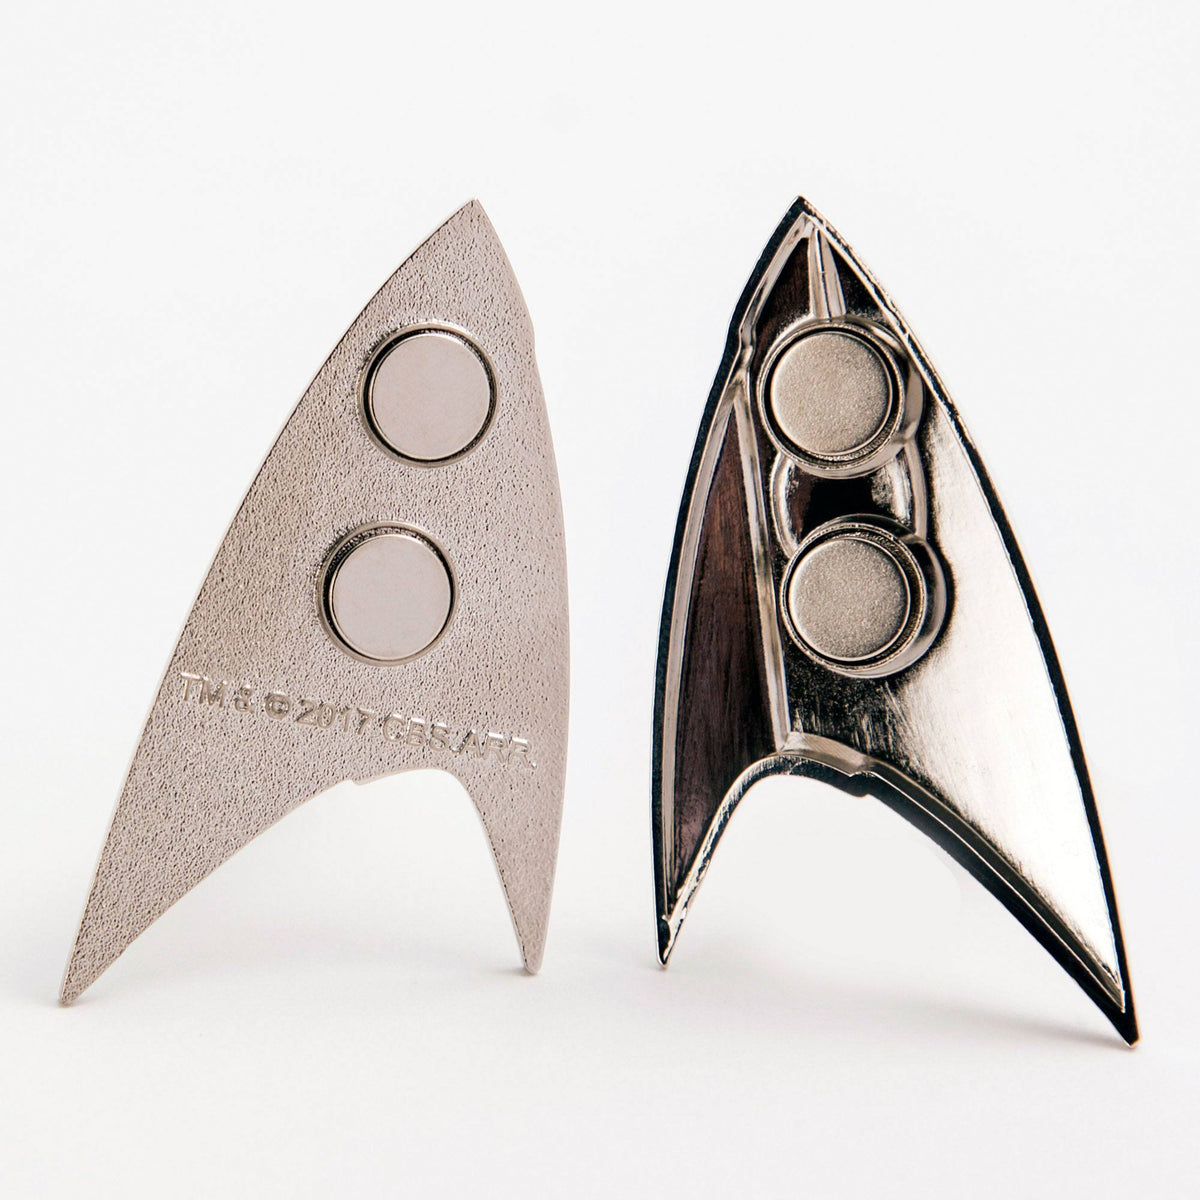 Star Trek Badges: Discovery Badge, Science – Star Trek Unlimited